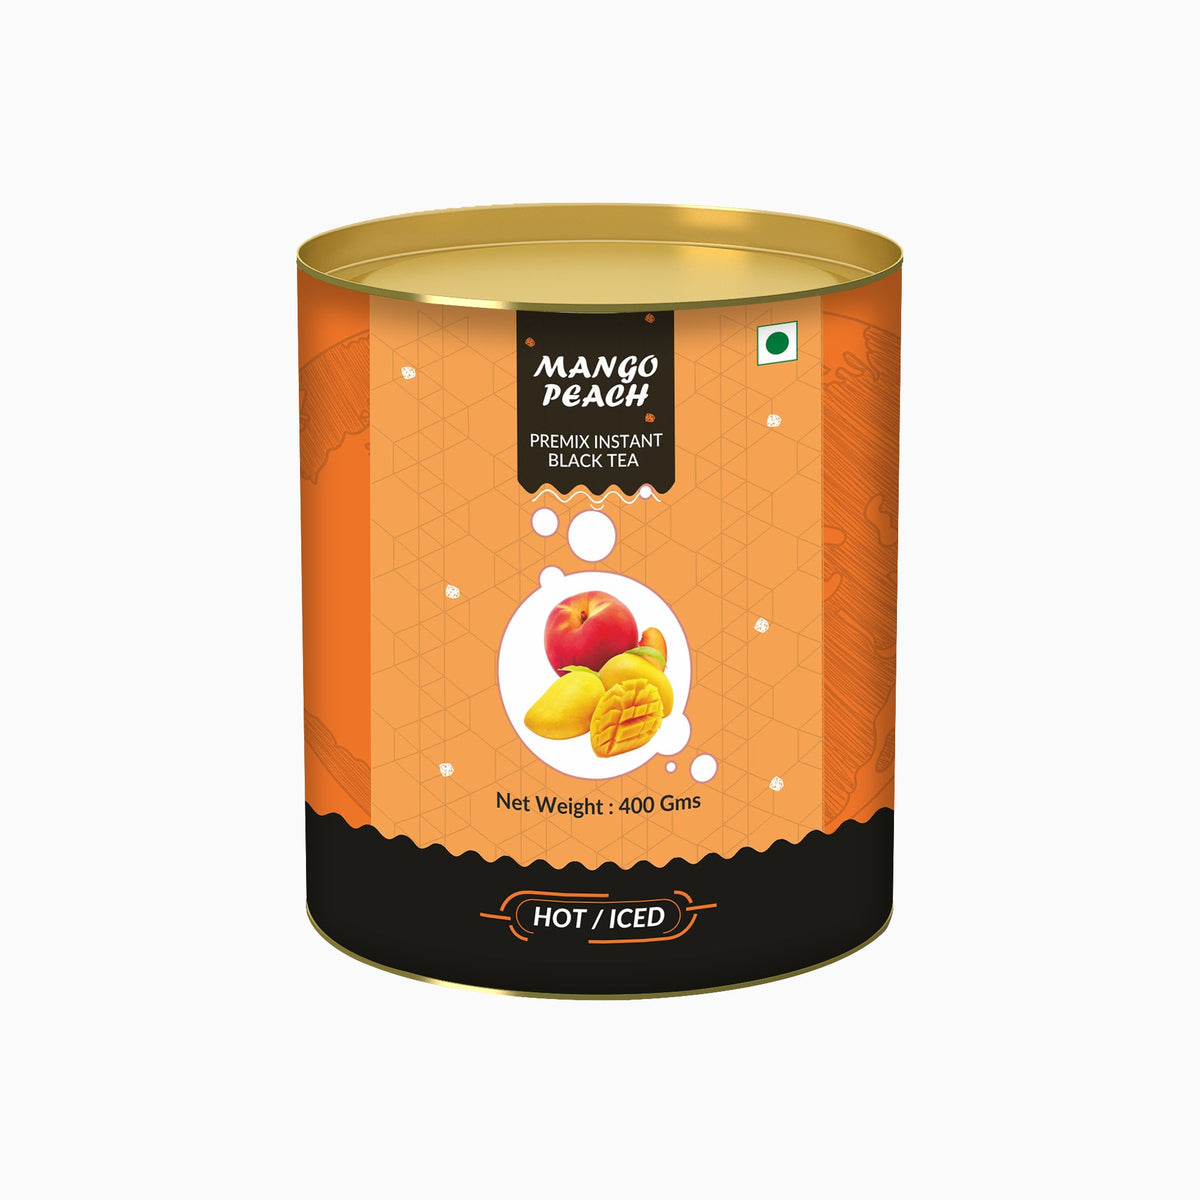 Mango & Peach Flavored Instant Black Tea